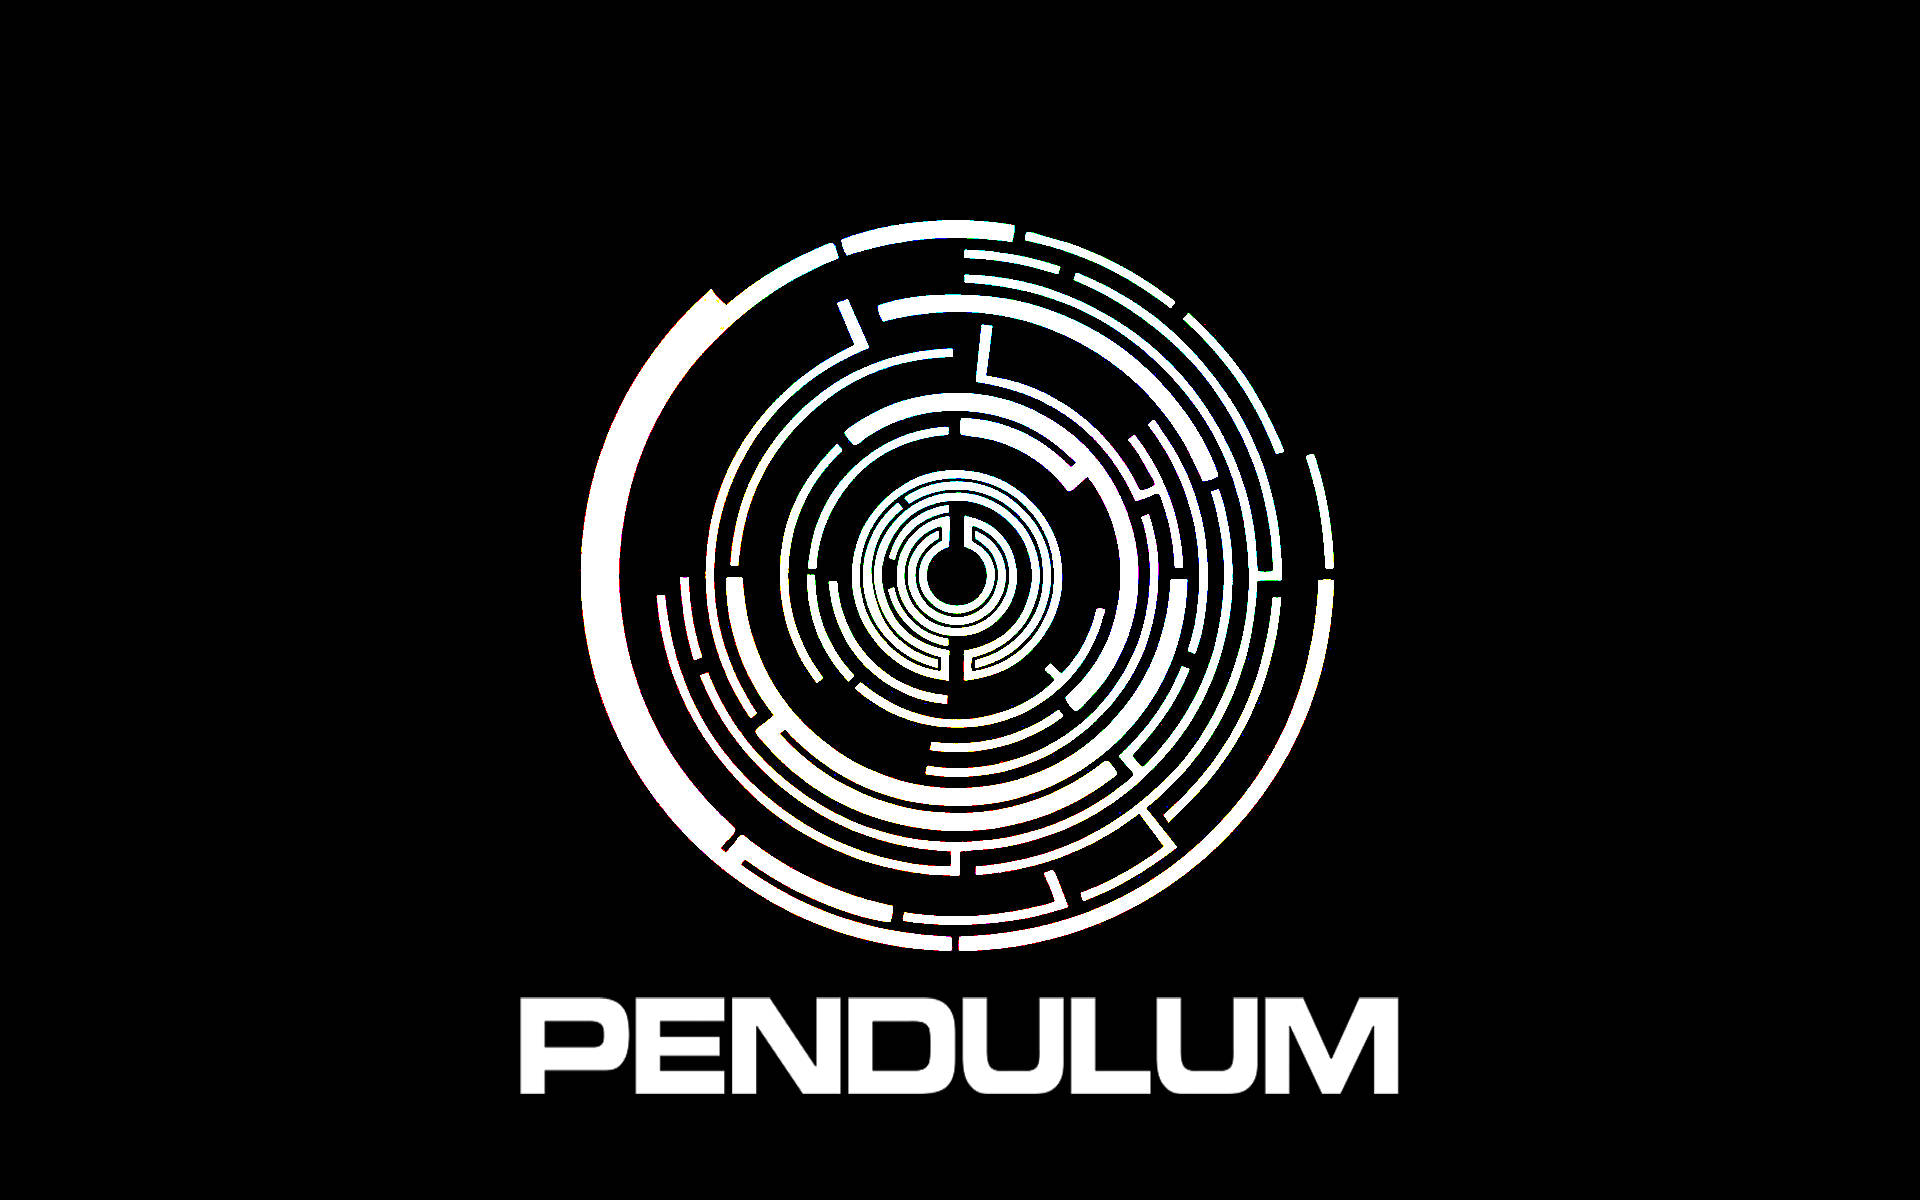 Music Pendulum Wallpaper